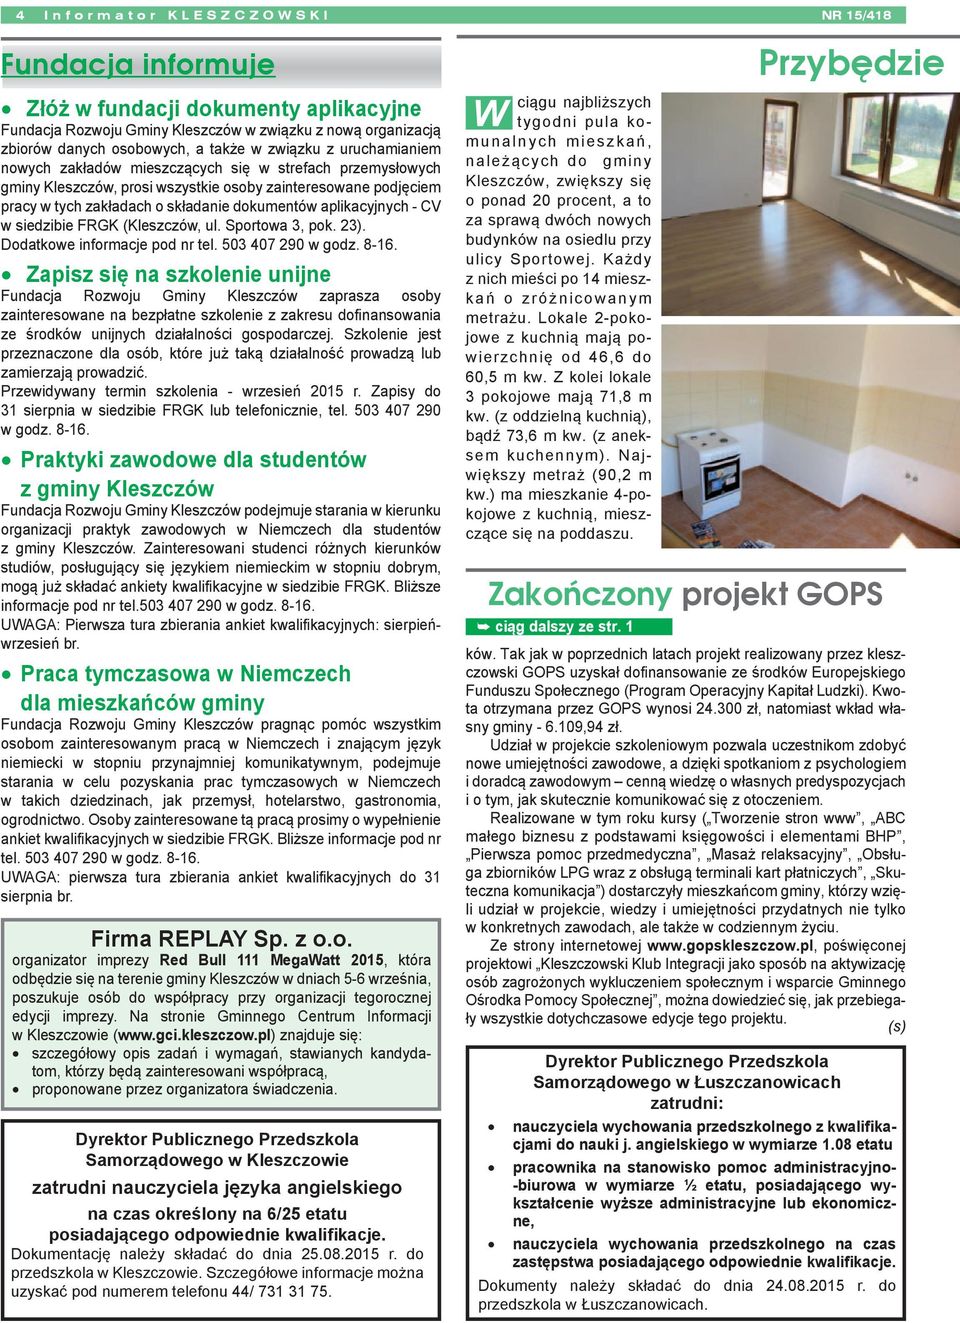 CV w siedzibie FRGK (Kleszczów, ul. Sportowa 3, pok. 23). Dodatkowe informacje pod nr tel. 503 407 290 w godz. 8-16.